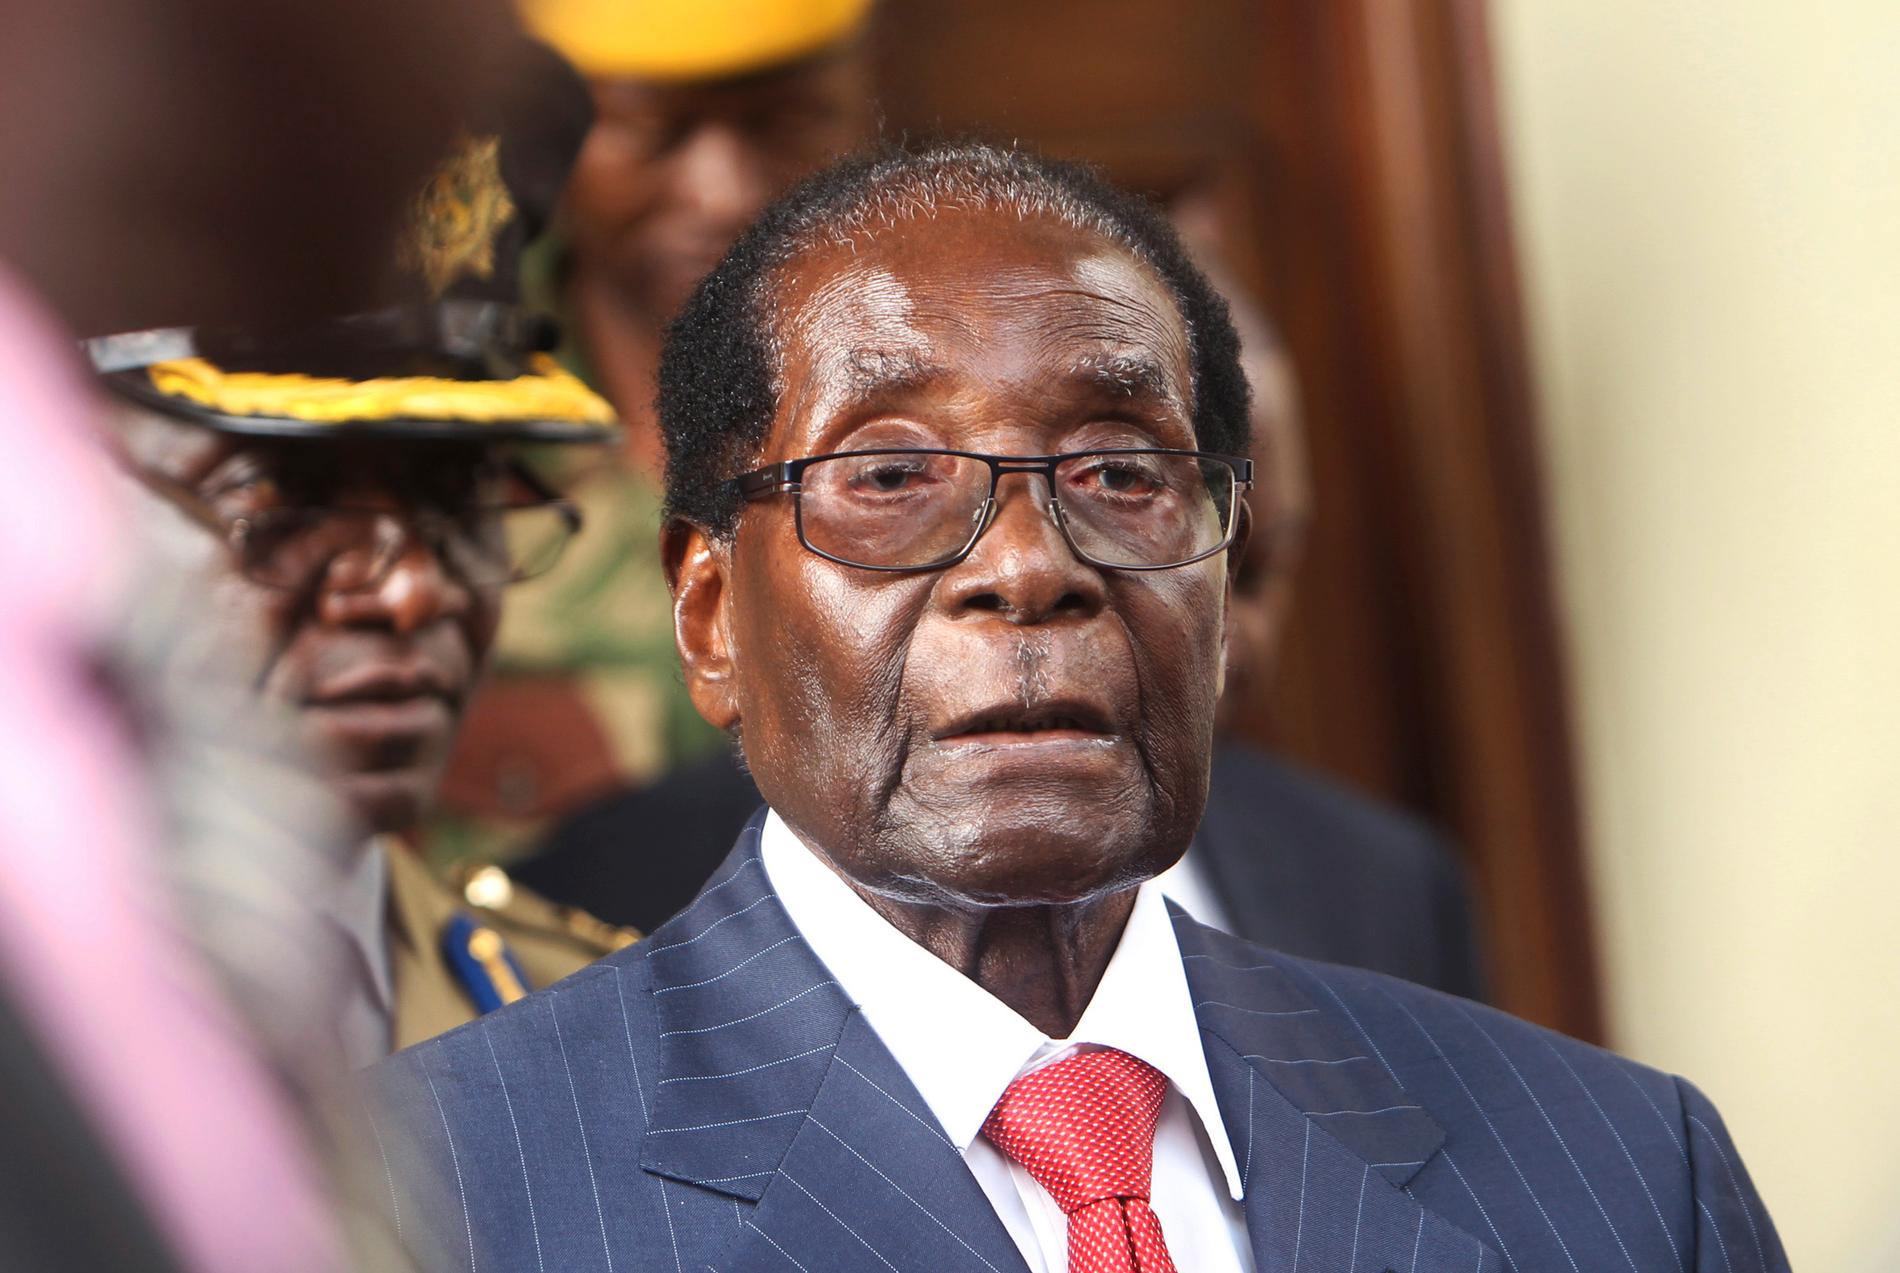 Robert Mugabe kommer att bli ihågkommen för sin roll i Zimbabwes frigörelse från kolonialstyre, men också för bristen på demokratisk utveckling och våld, tror Henning Melber.